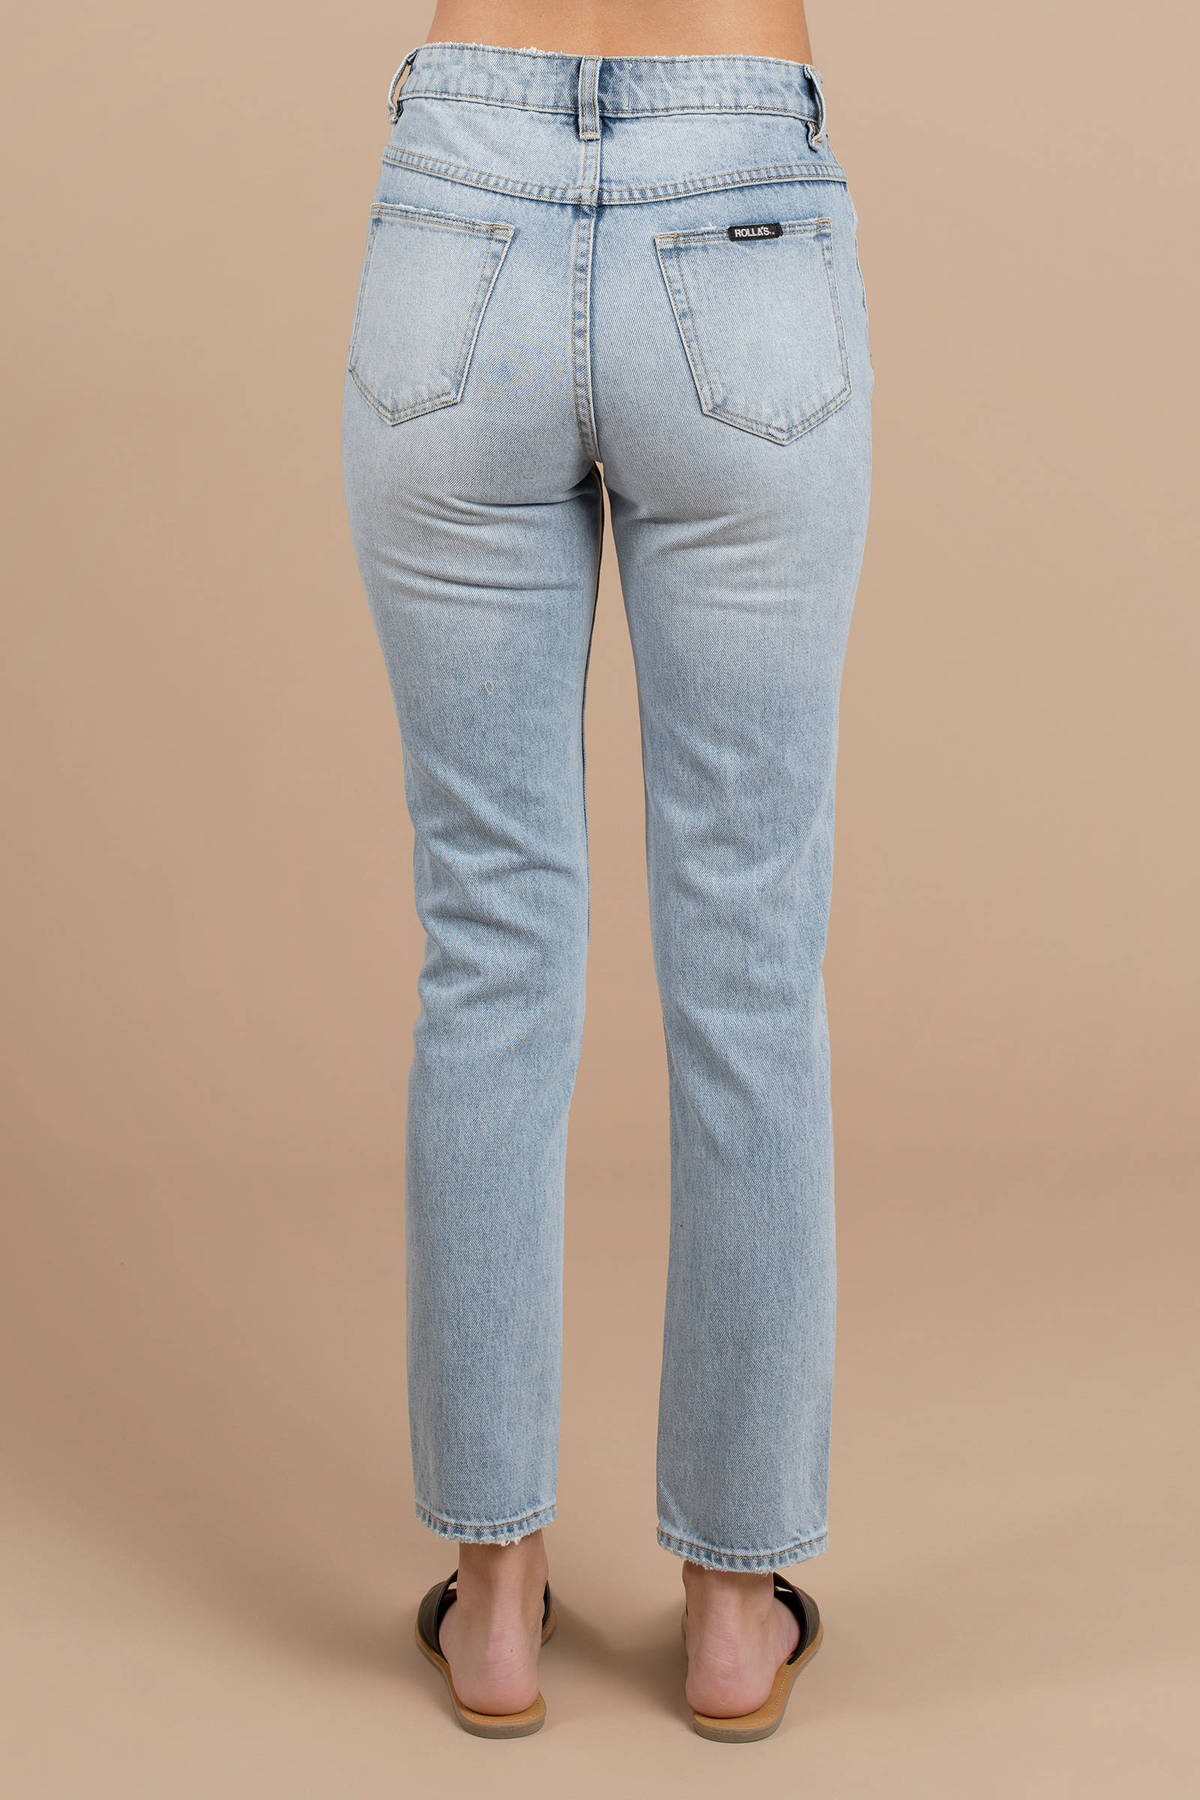 Miller Skinny Jean in Medium Wash - $60 | Tobi US